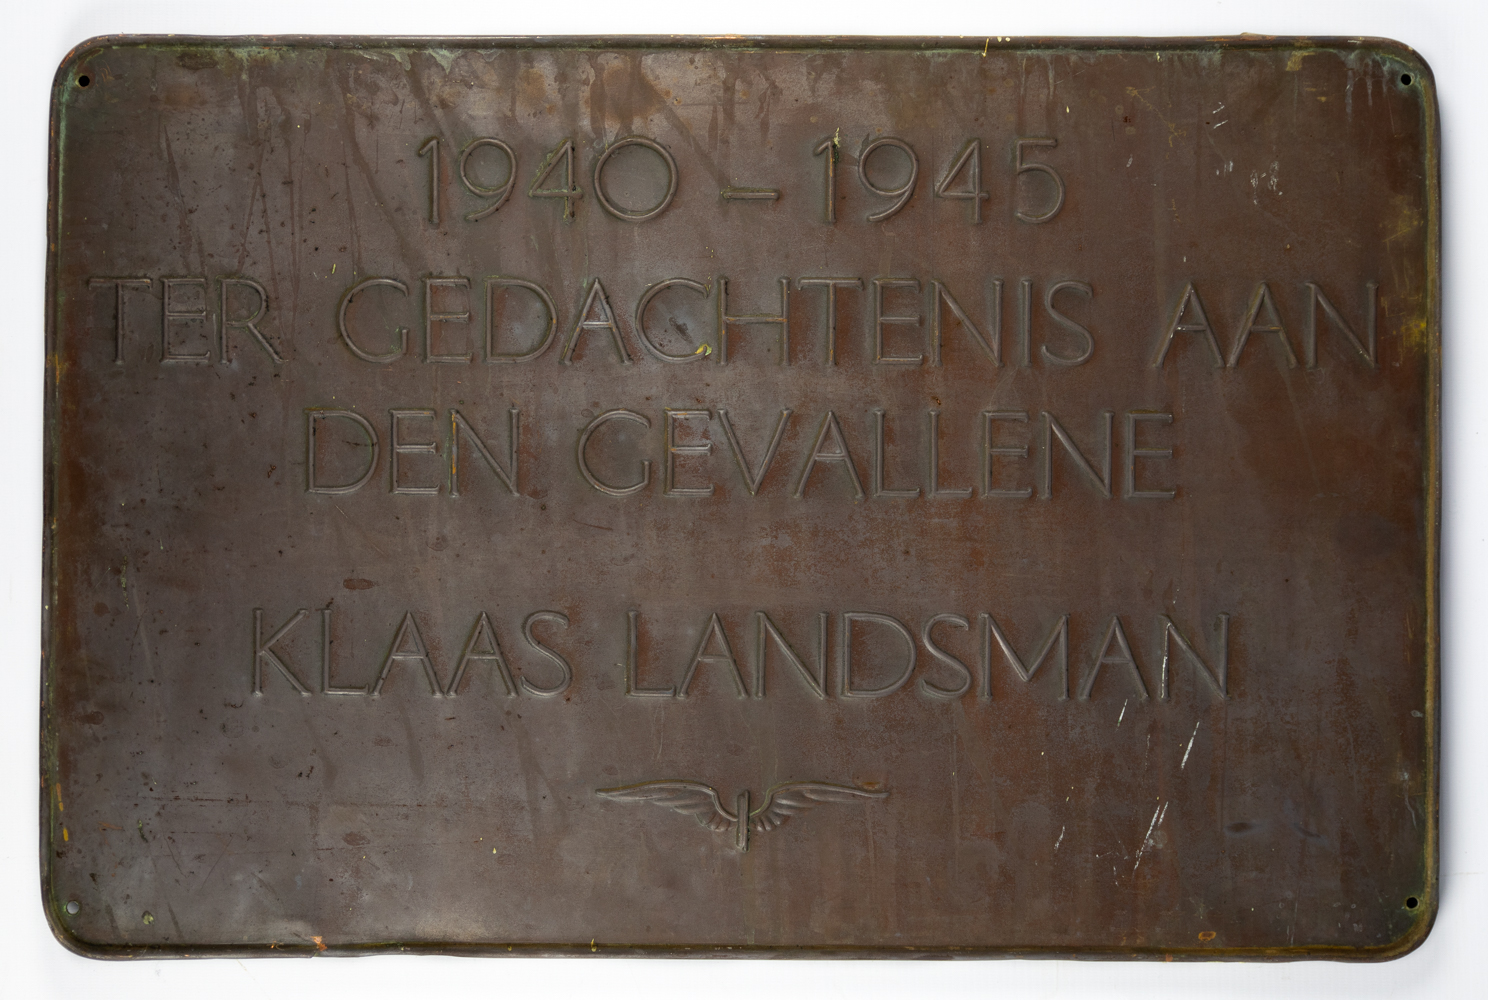 1940-1945 Ter nagedachtenis aan den gevallene Klaas Landsman